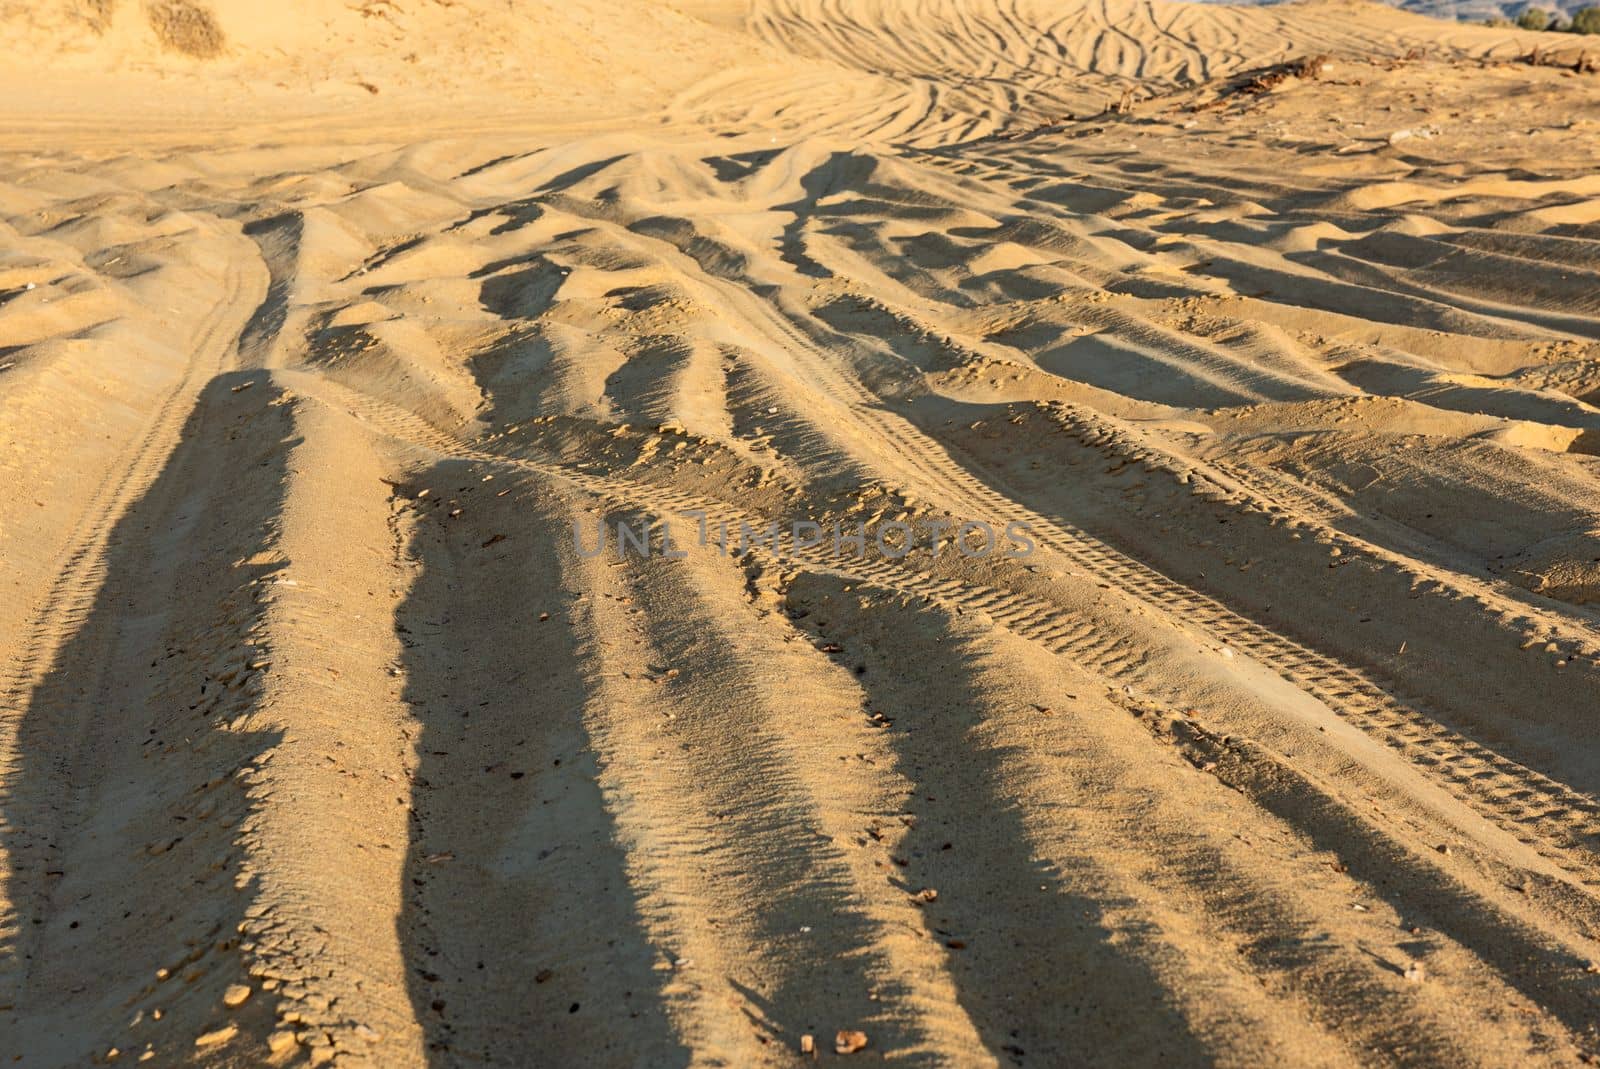 Barren desert landscape with vehicle tracks in sand dunes by paulvinten